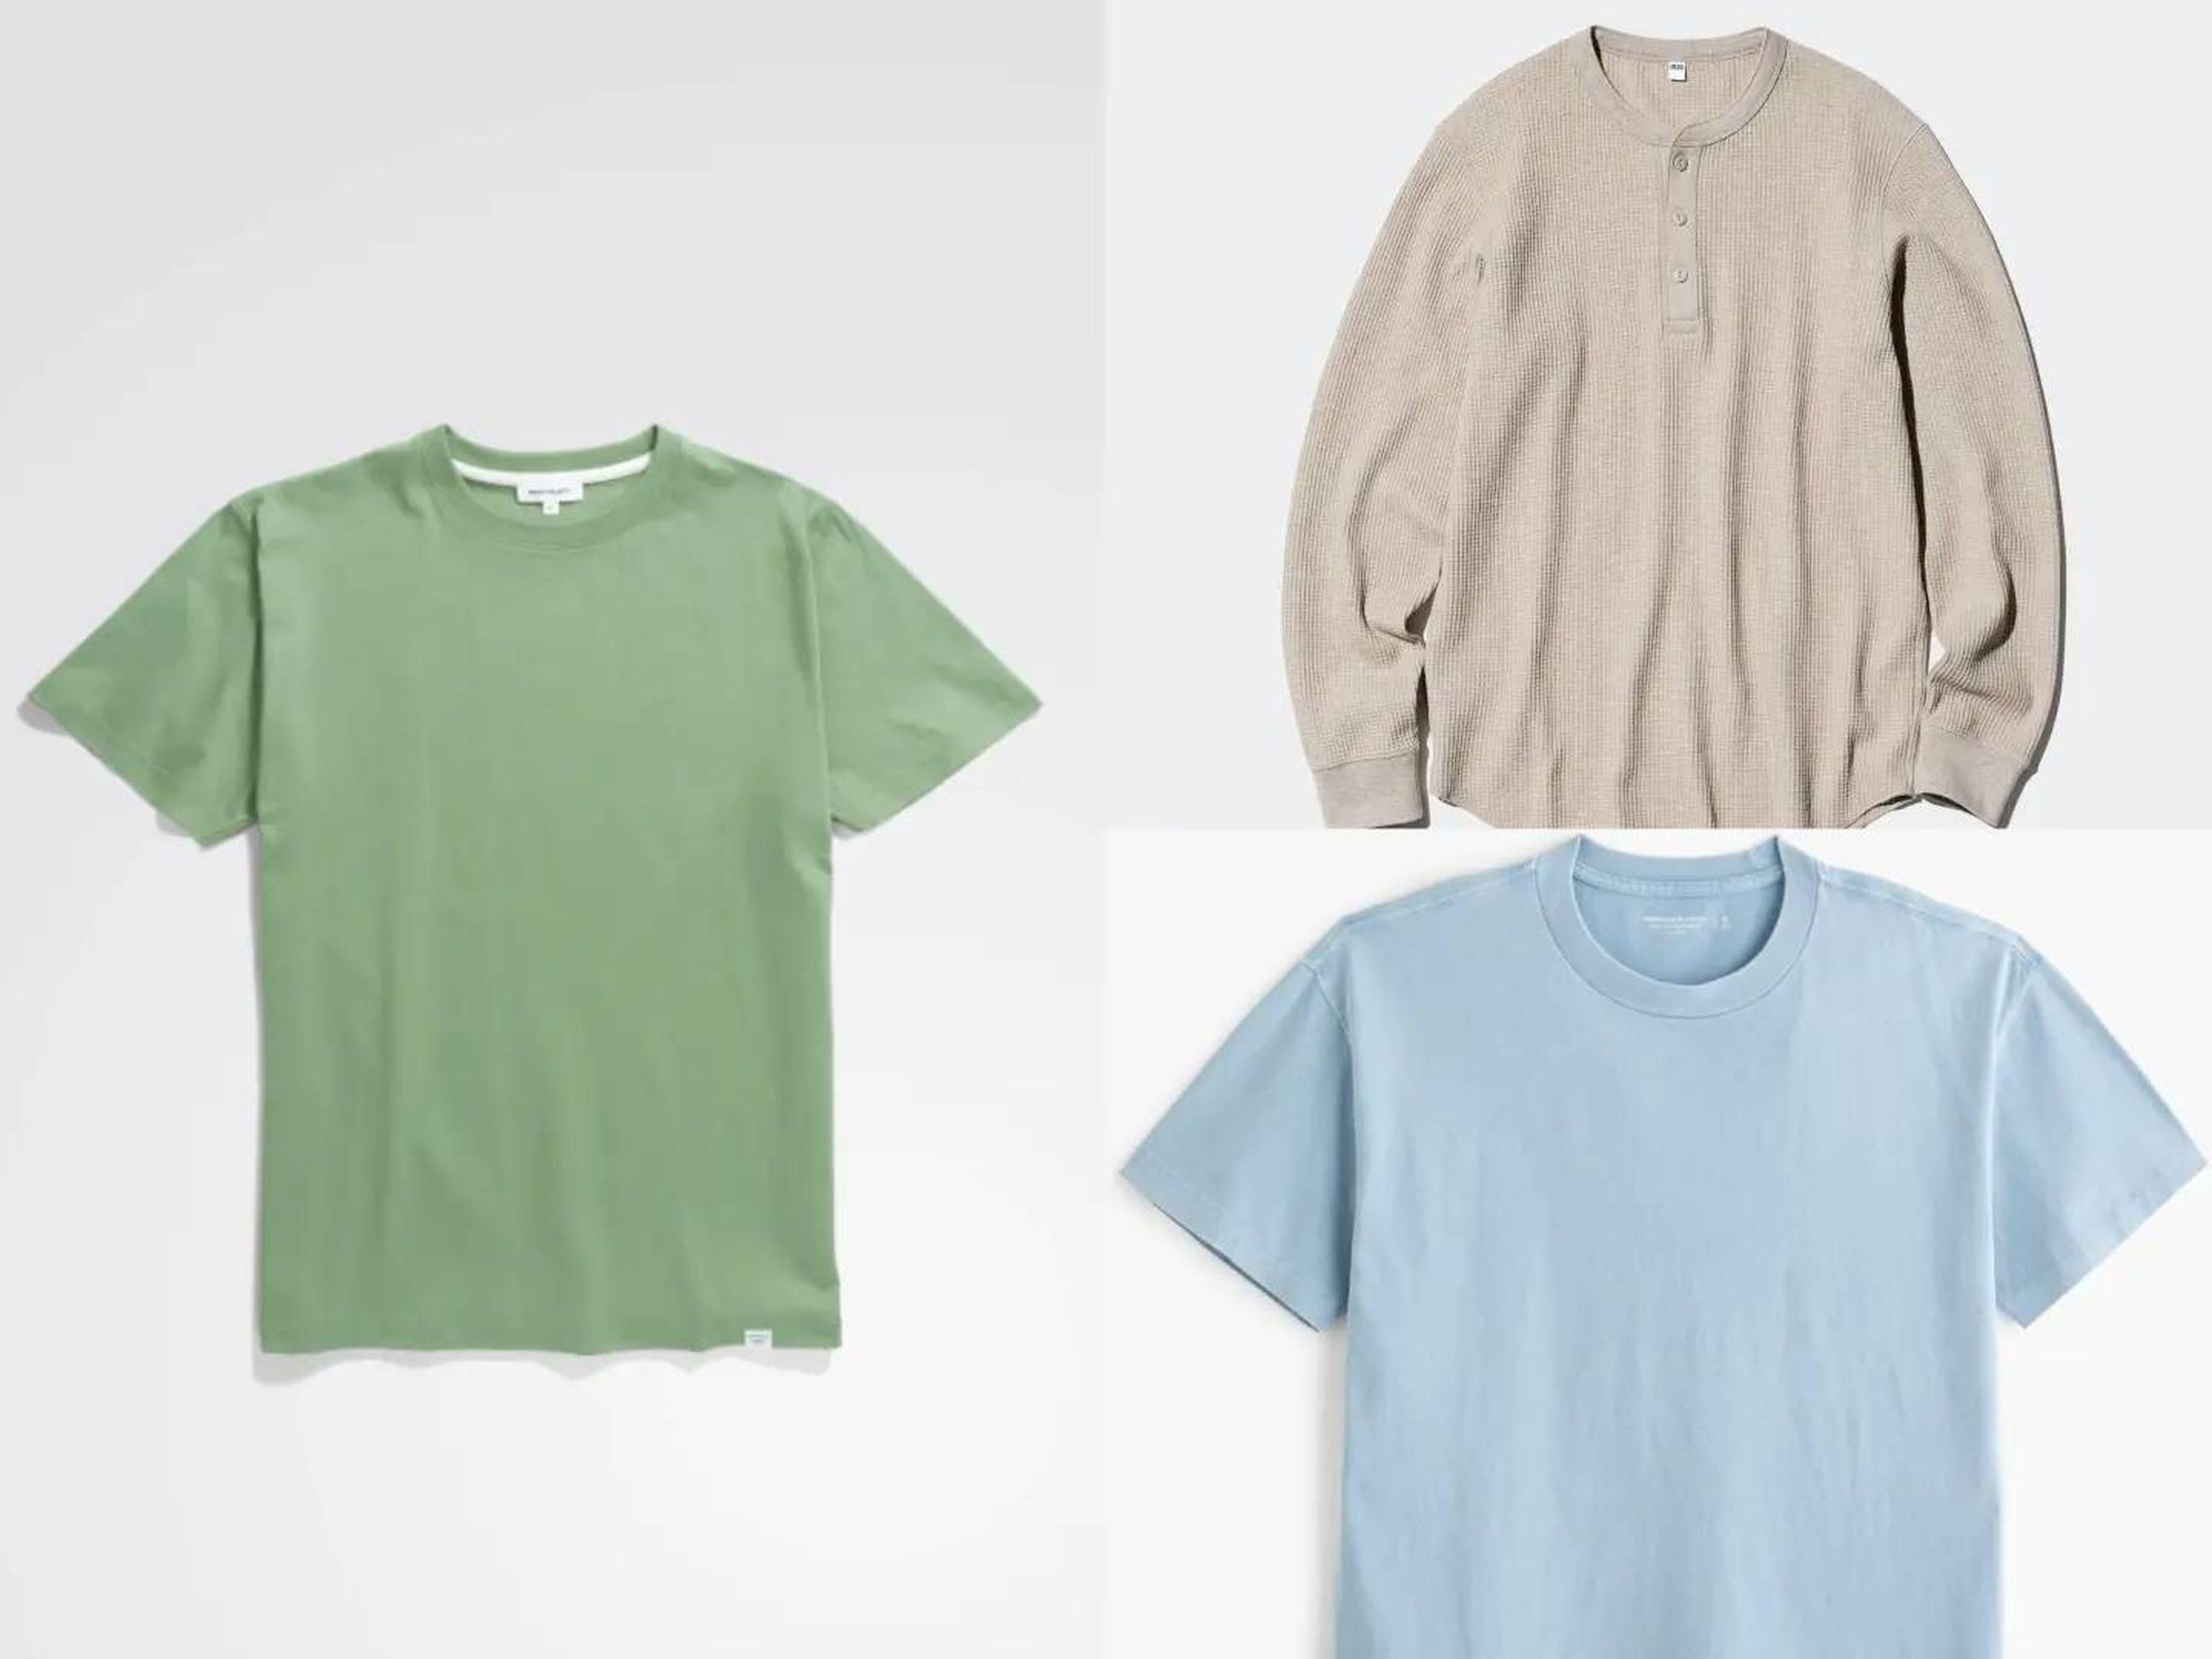 La camiseta Norse Project (izquierda) cuesta 80 dólares, la henley Uniqlo (arriba a la derecha) 30 dólares y la camiseta Abercrombie & Fitch (abajo a la derecha) 19 dólares.